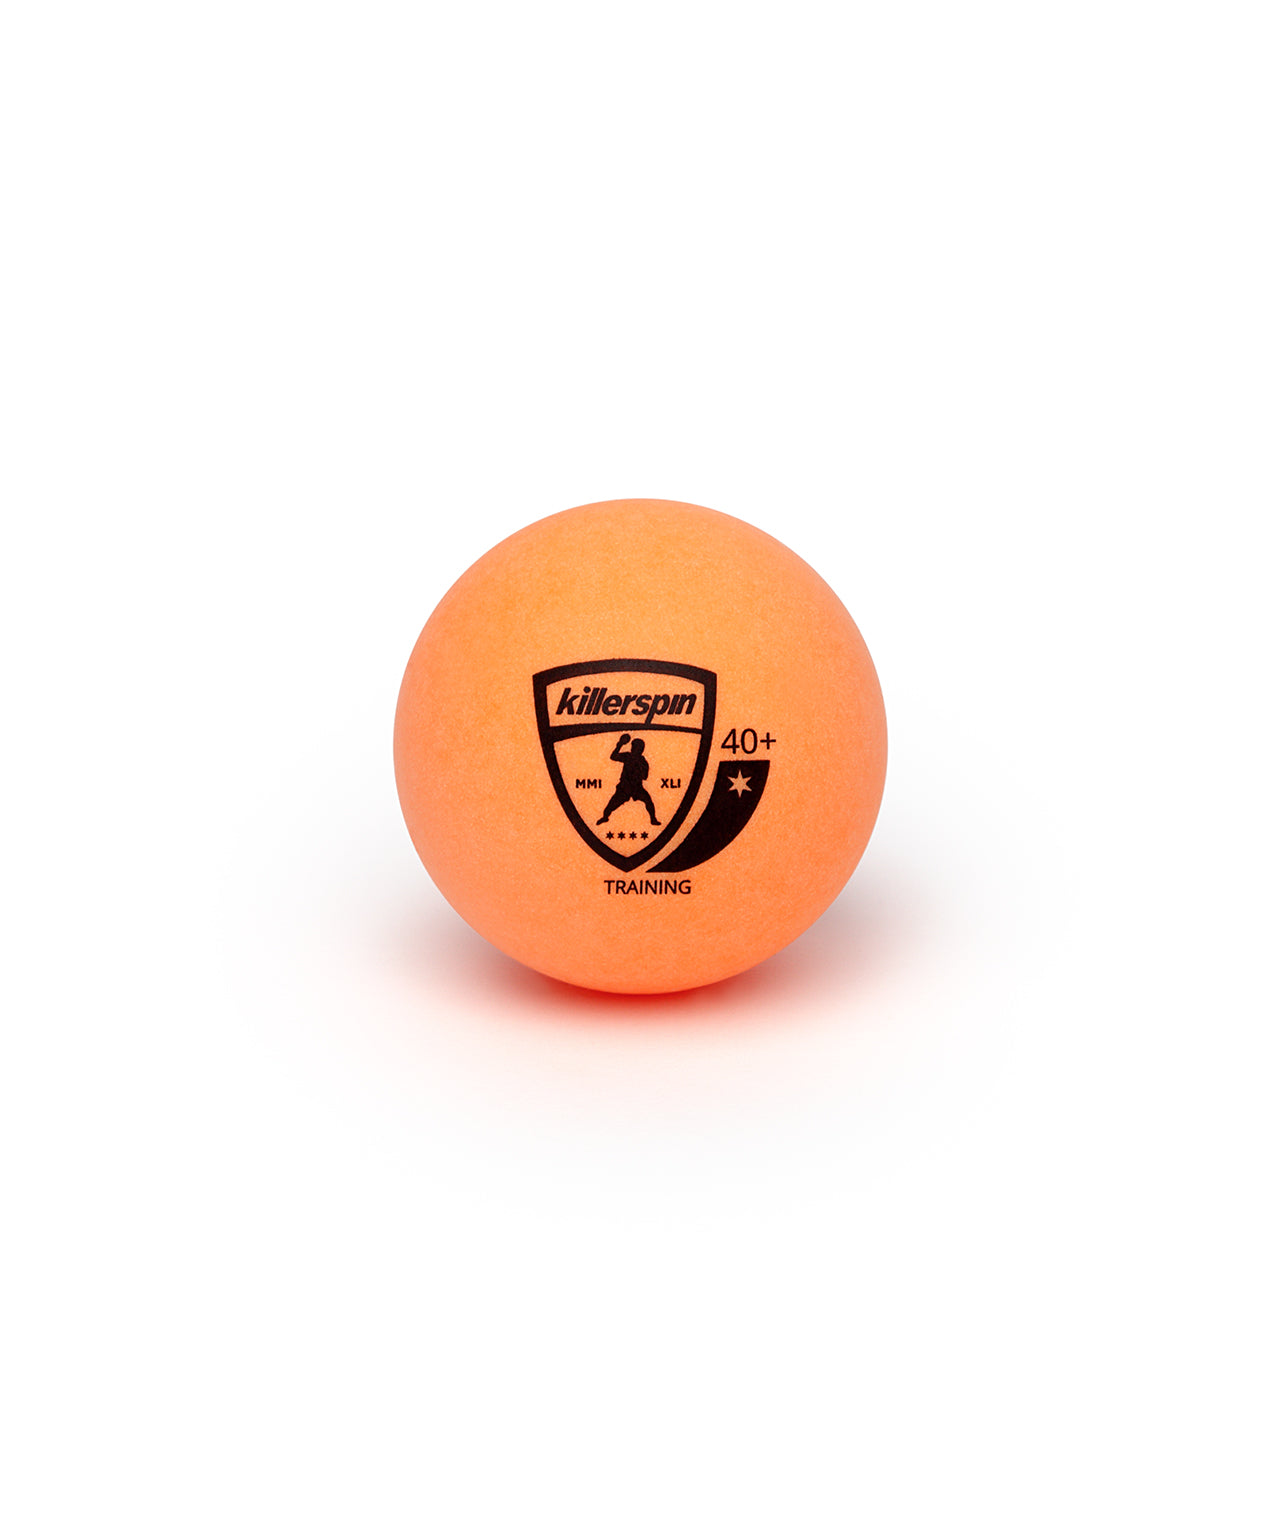 Killerspin Training Ping Pong Orange Balls - Logo